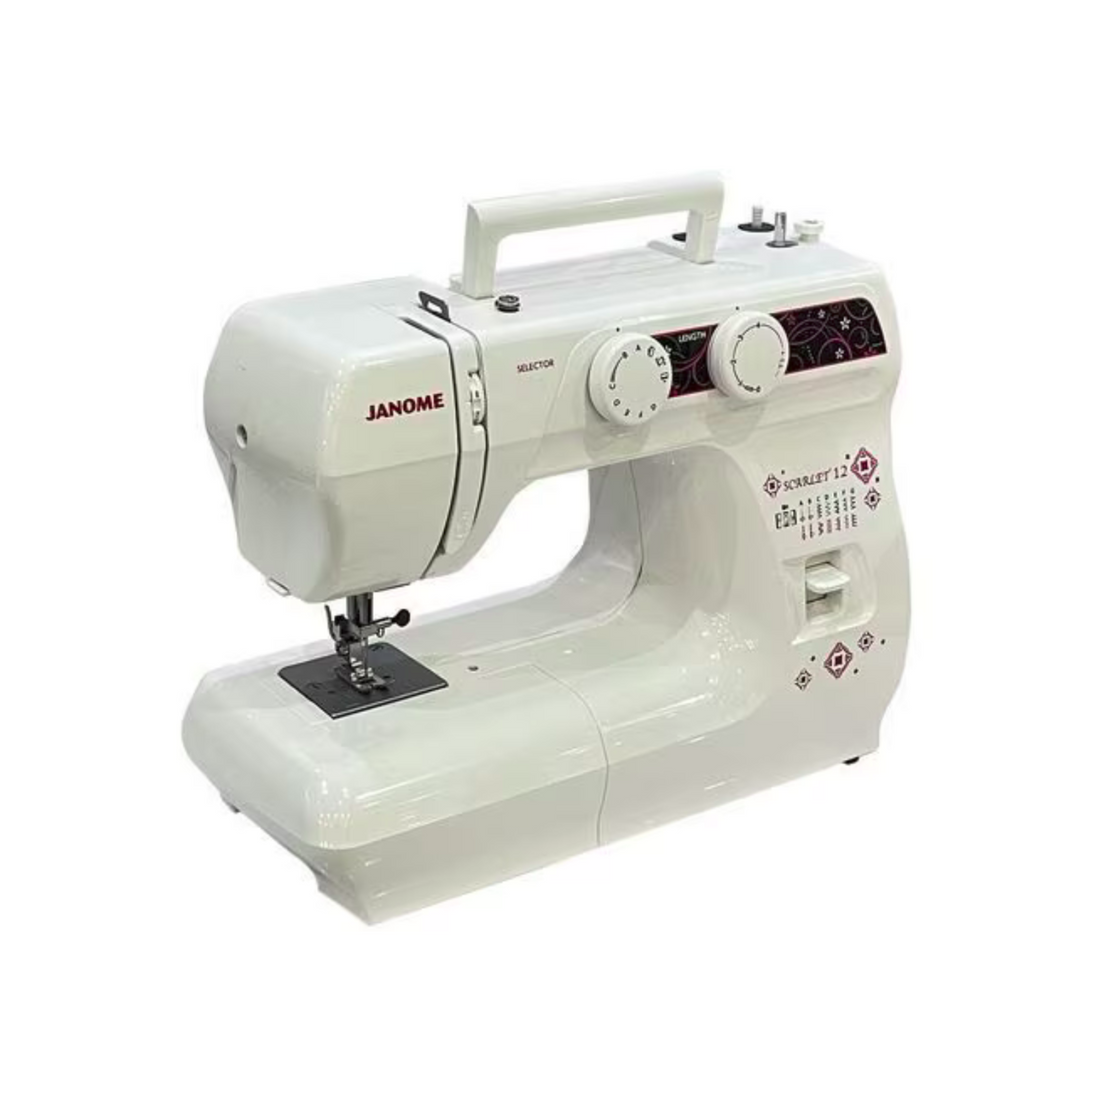 Best Sewing Machine Online at Best Price